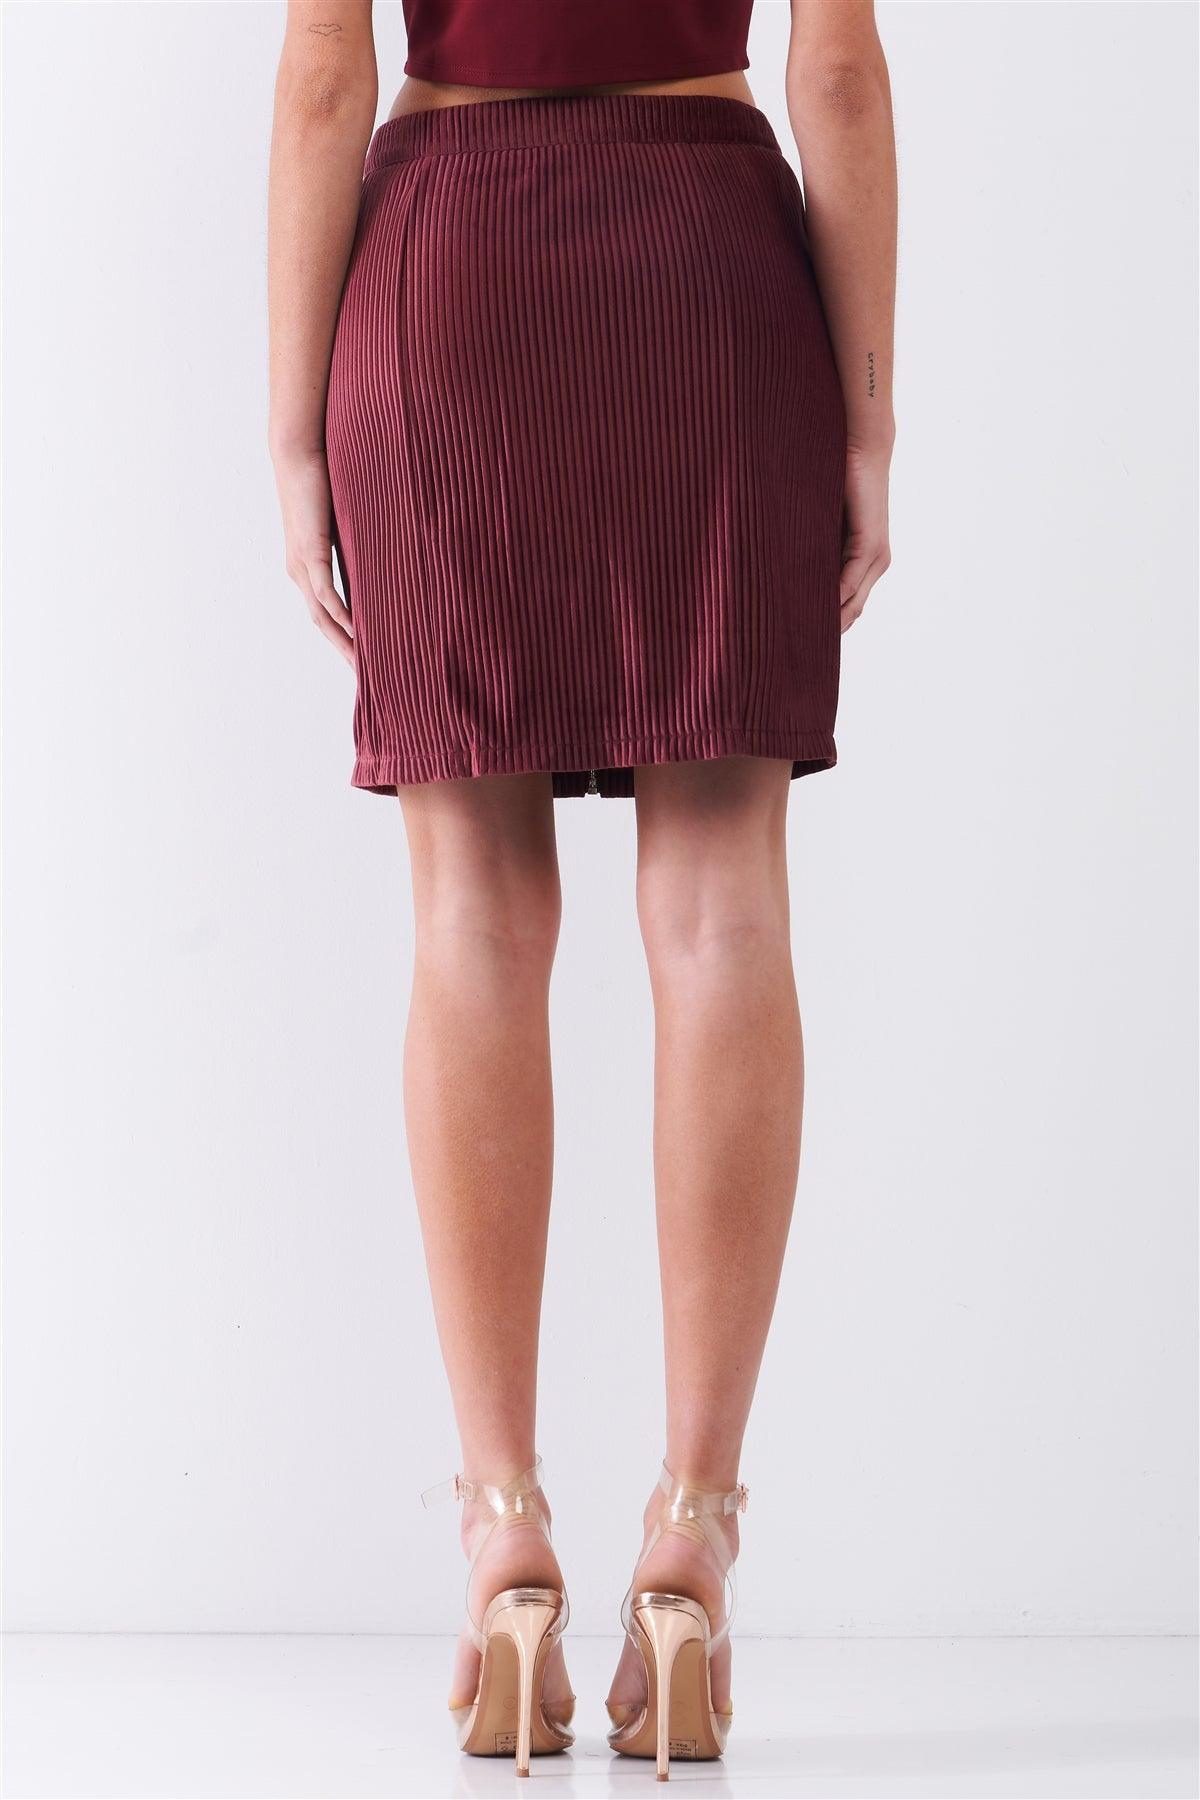 Plum Velvet Ribbed High Waist Front Zip-Up Detail Tight Mini Skirt /1-2-2-1